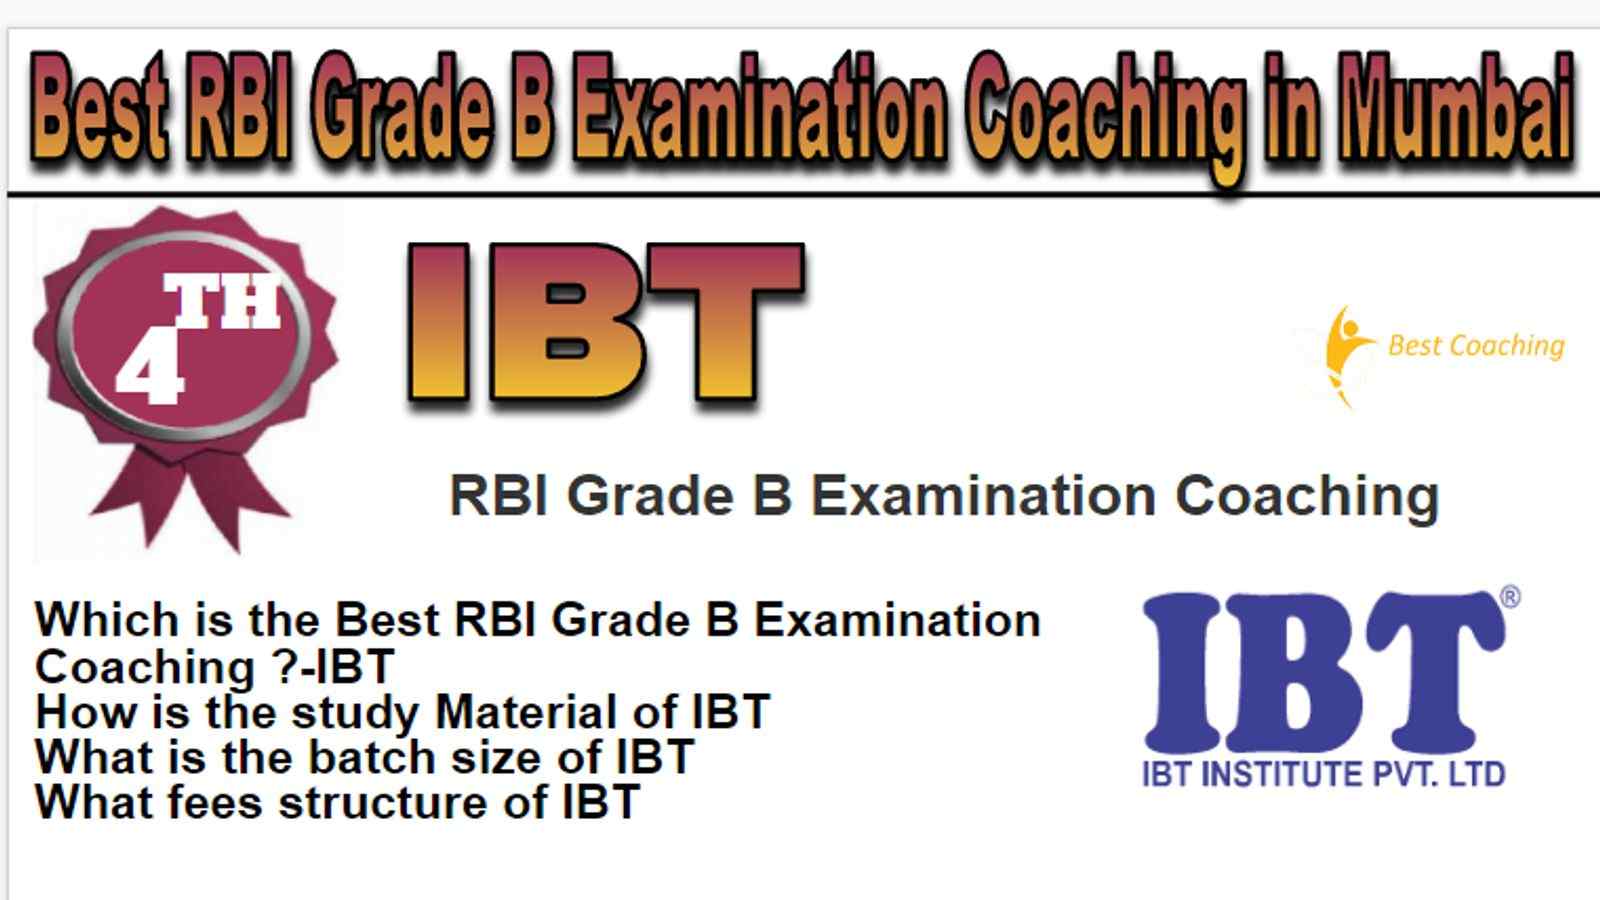 Rank 4 Best RBI Grade B Examination Coaching in Mumbai